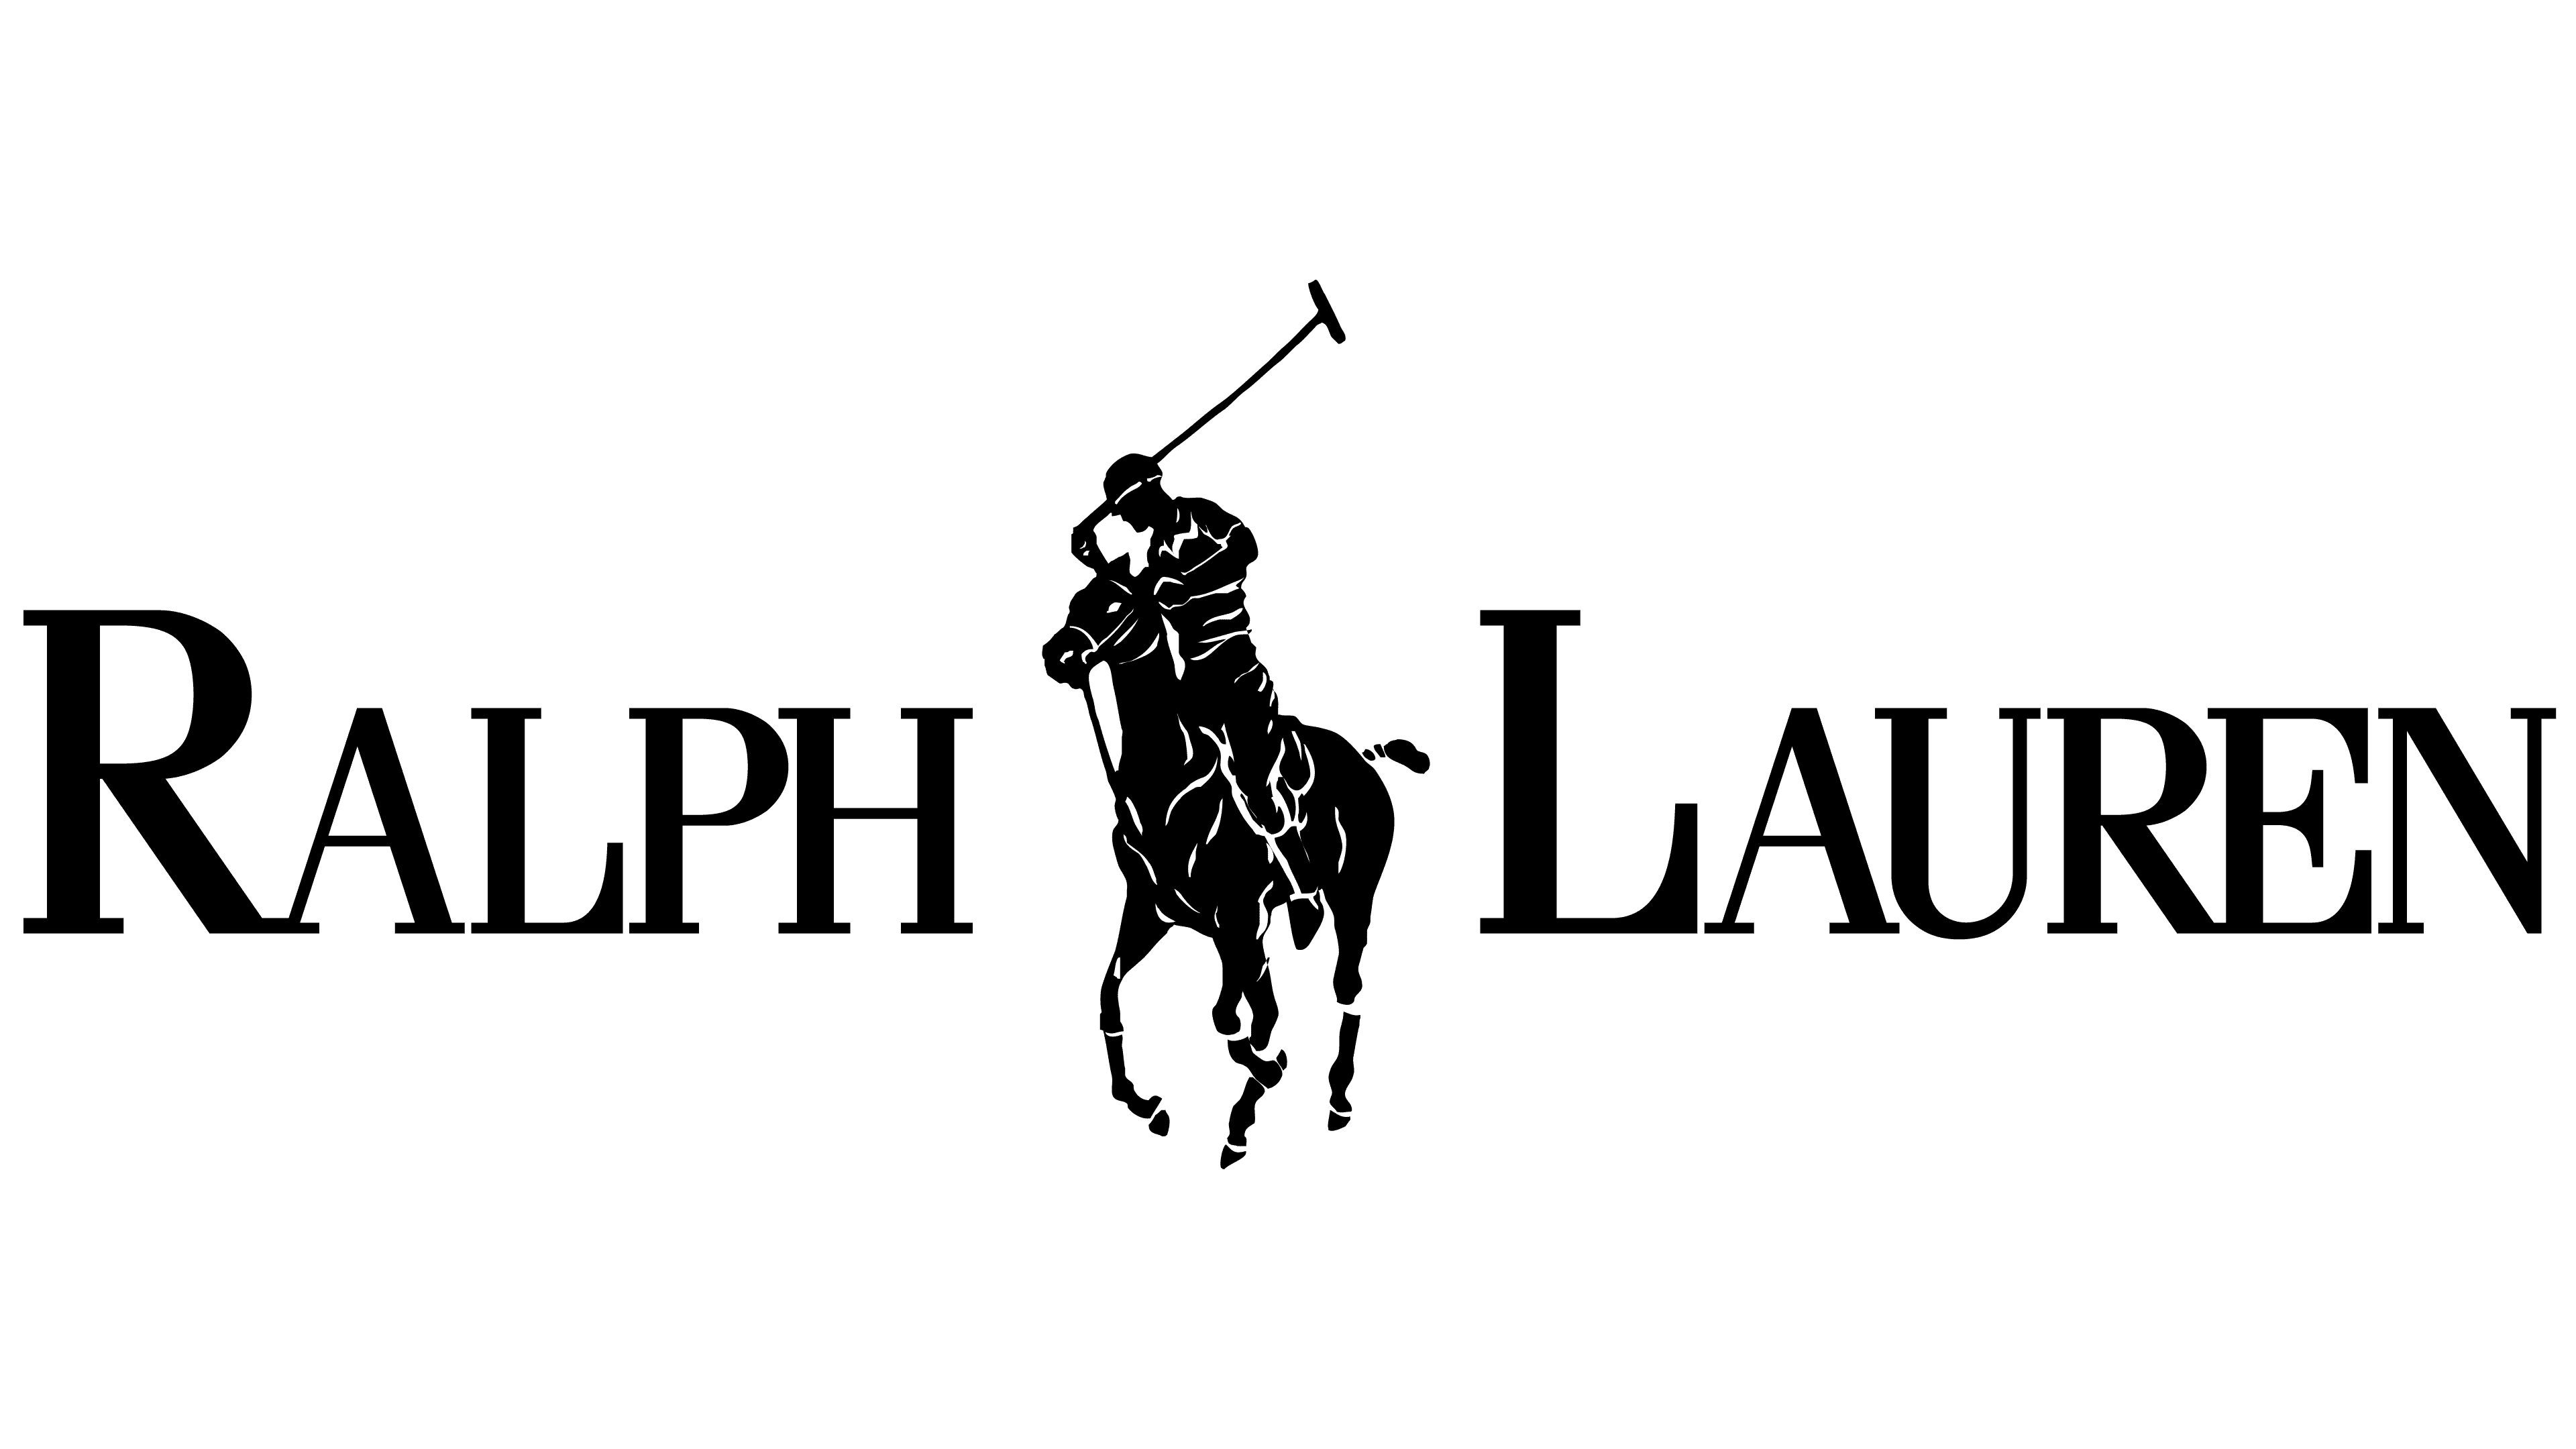 polo vs ralph lauren logo